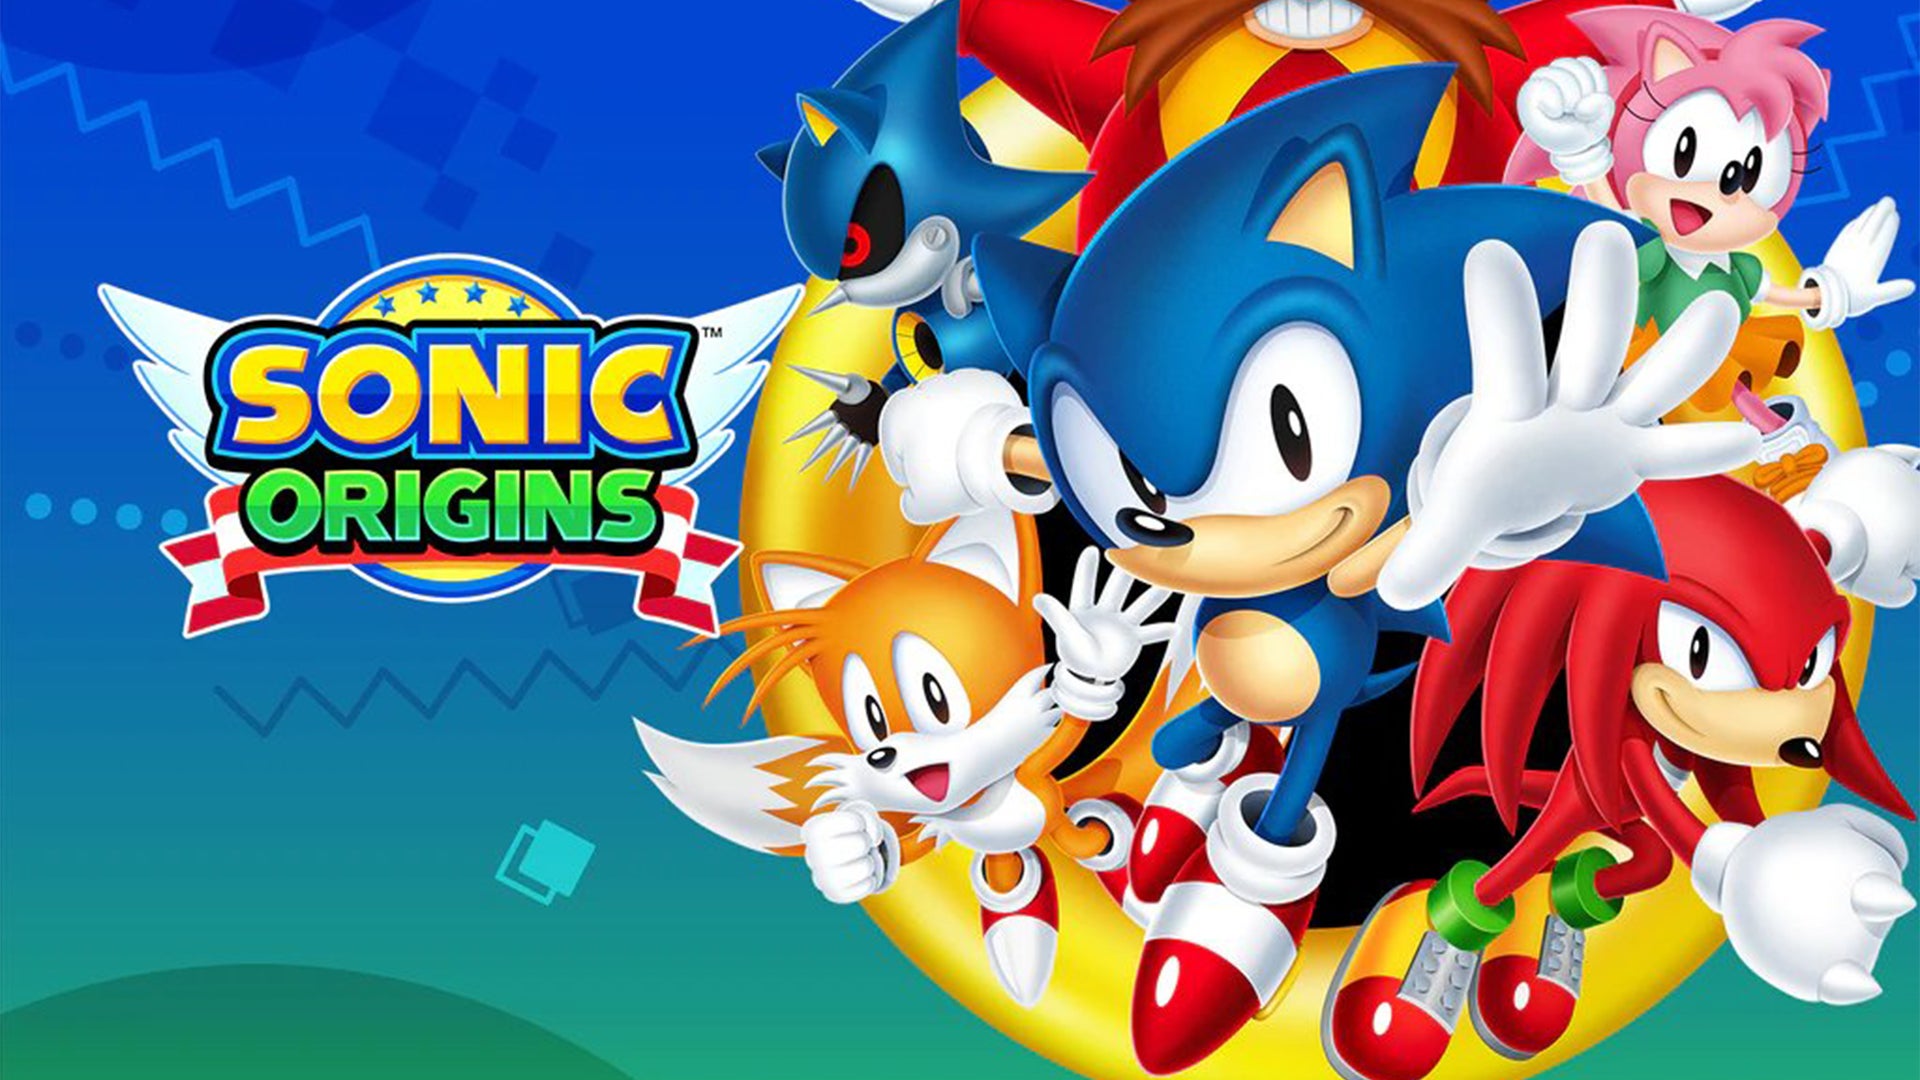 Immagine di Sonic Origins: arrivano ulteriori conferme sul suo arrivo imminente grazie al leak della sua cover art